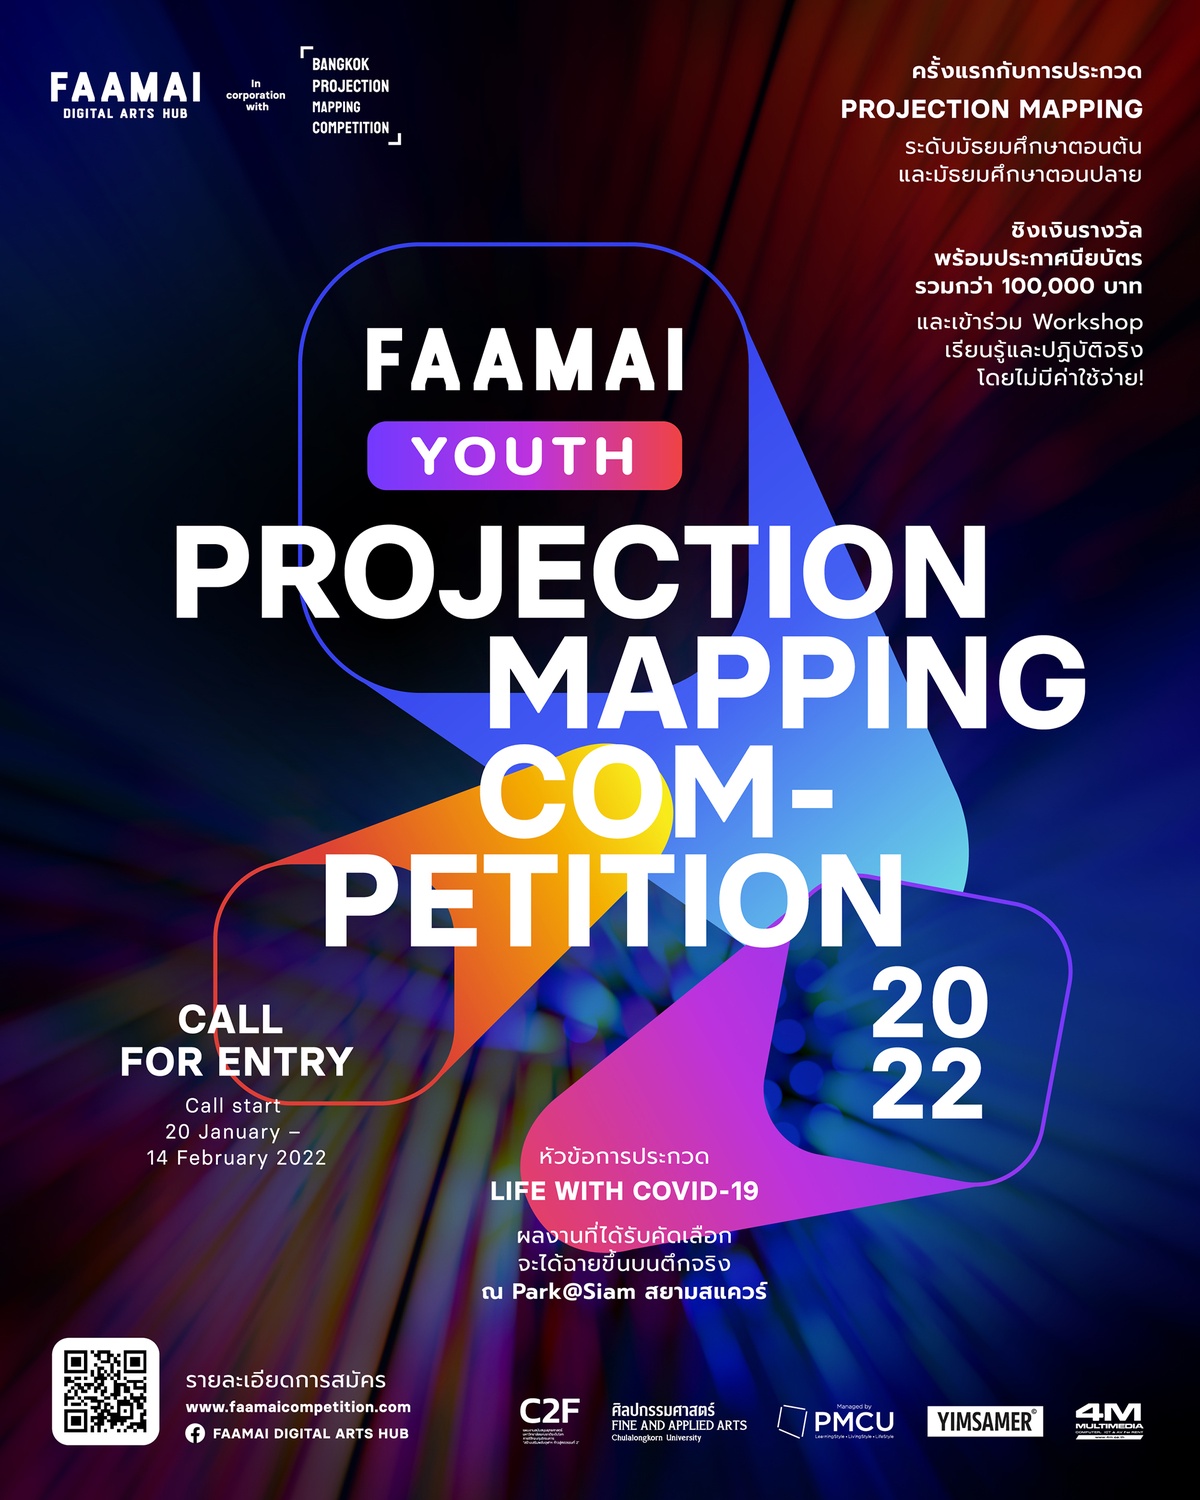 โครงการประกวด FAAMAI Youth Projection Mapping Competition 2022 ชวนนักเรียนมัธยมทั่วประเทศประกวดผลงานศิลปกรรมดิจิทัลครั้งแรกในประเทศไทย ชิงถ้วยรางวัล และทุนการศึกษากว่า 100,000 บาท